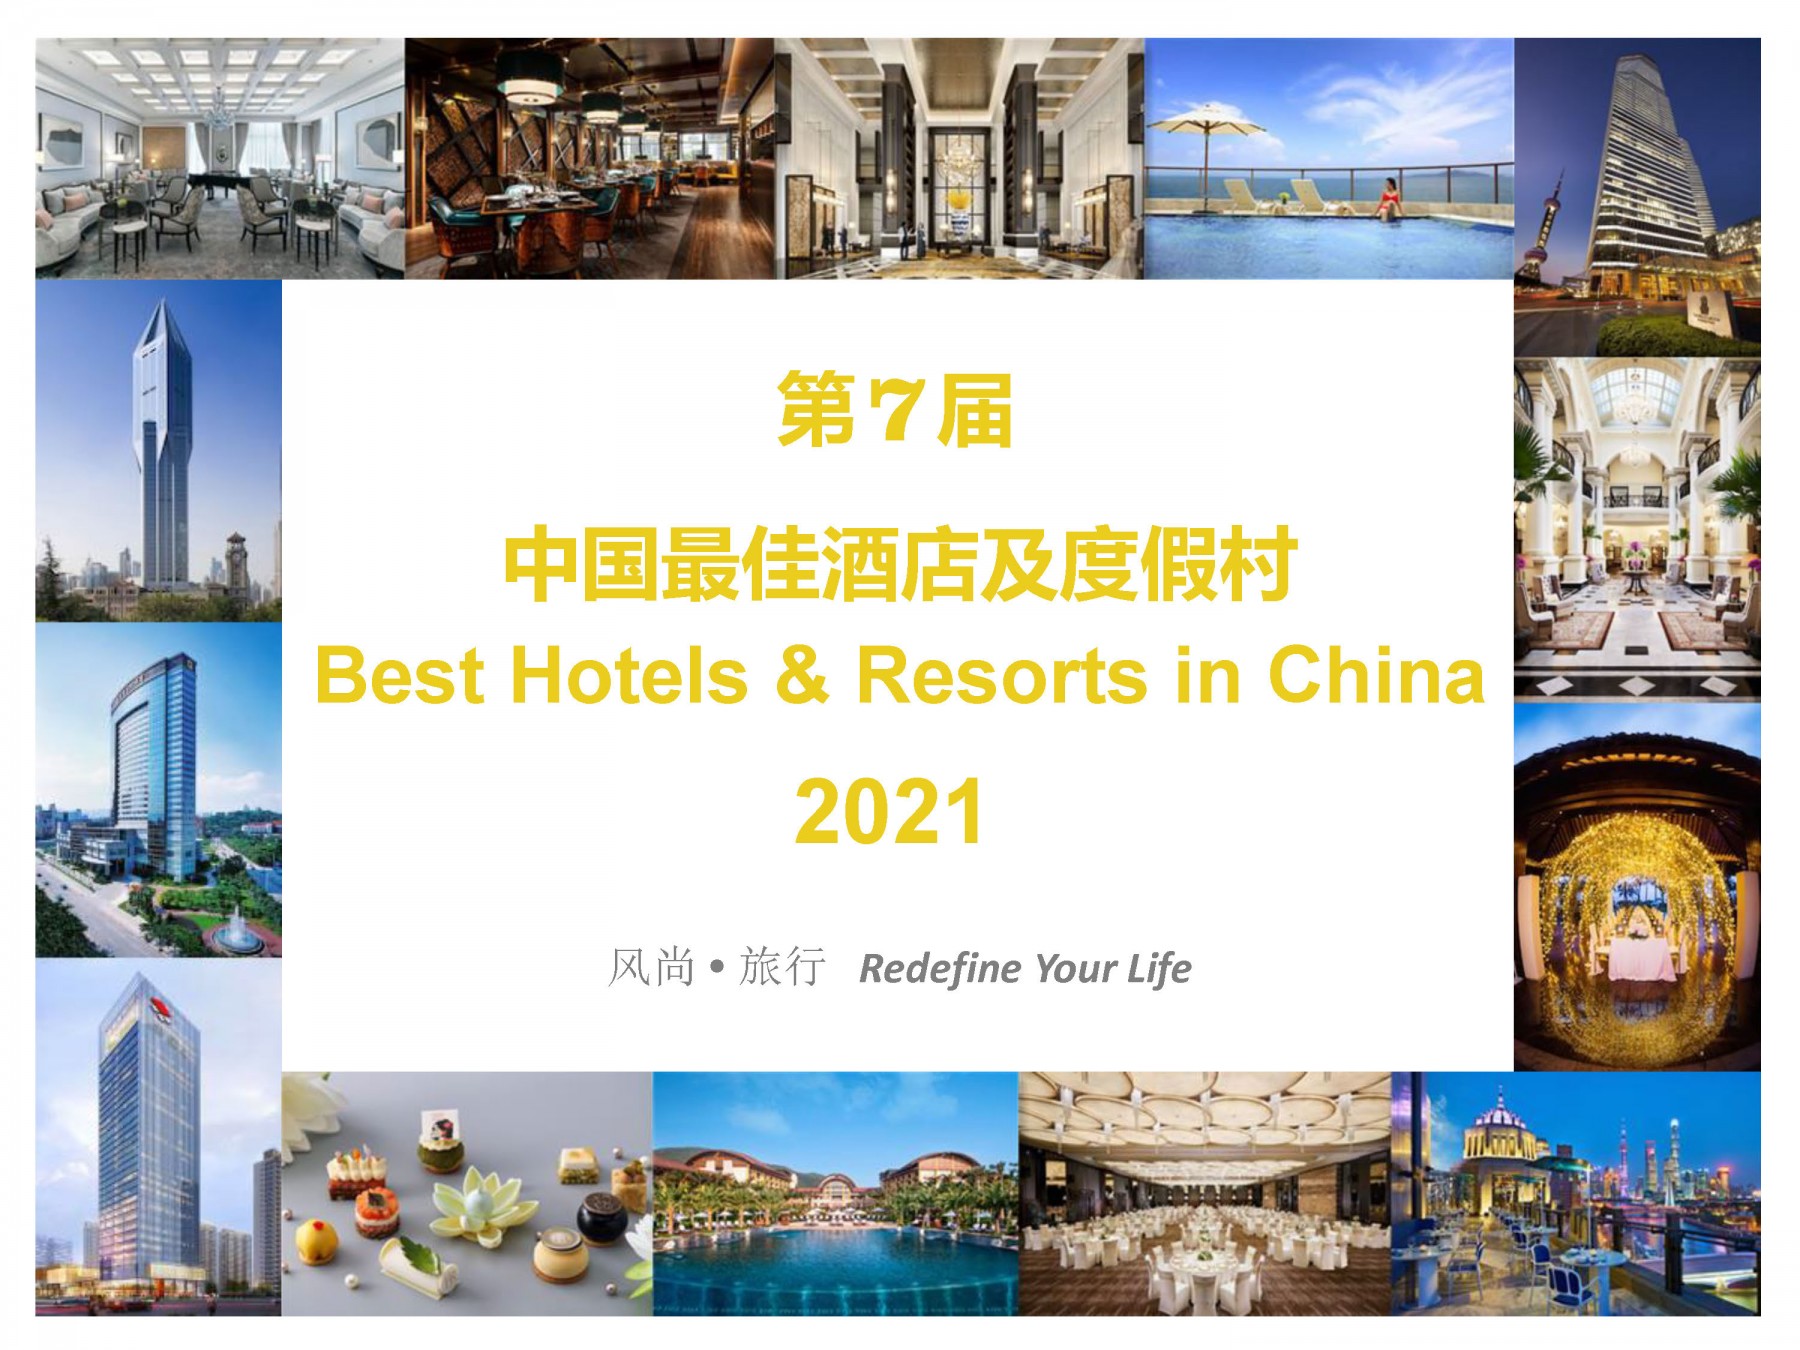 风尚旅行2021年度最佳酒店及度假村奖项评选活动方案_页面_02